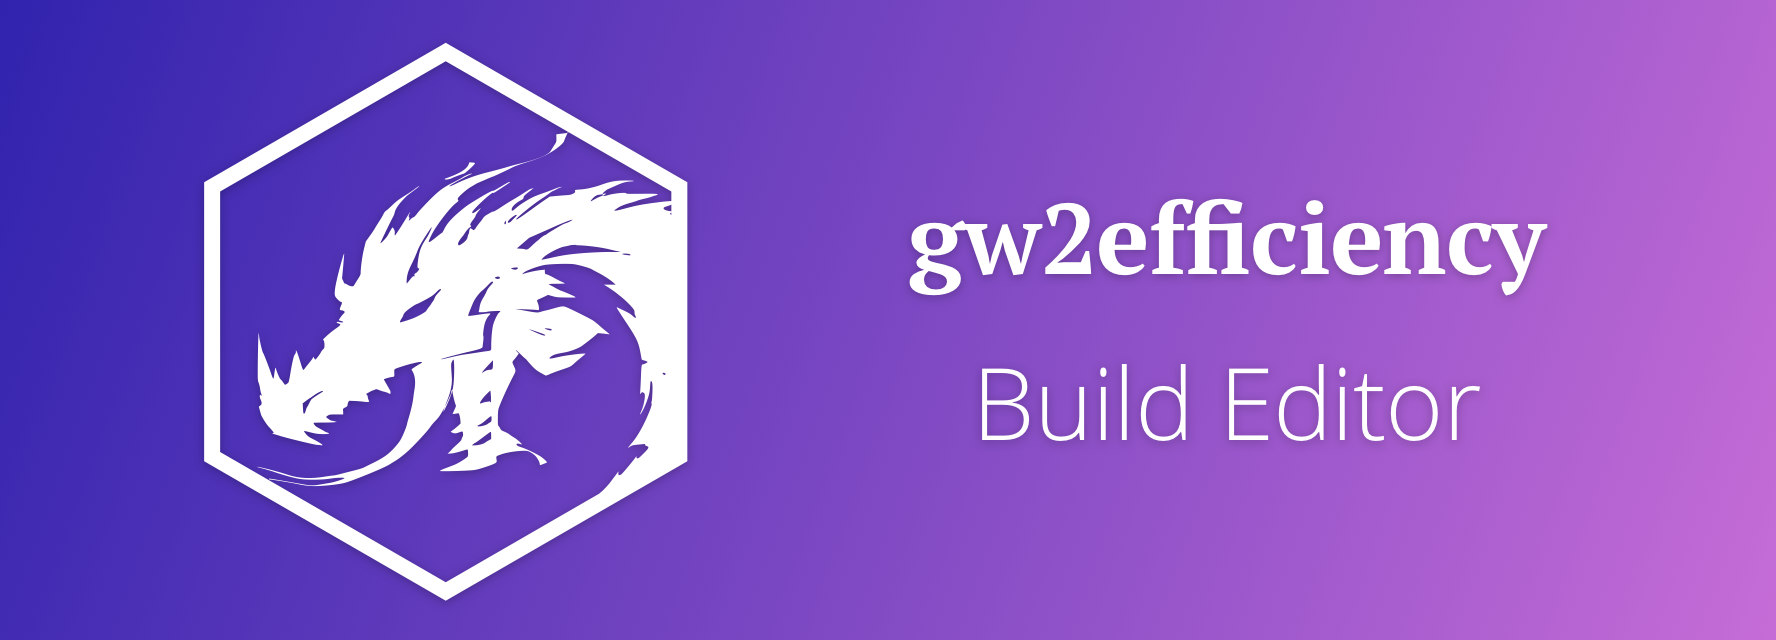 gw2efficiency Build Editor